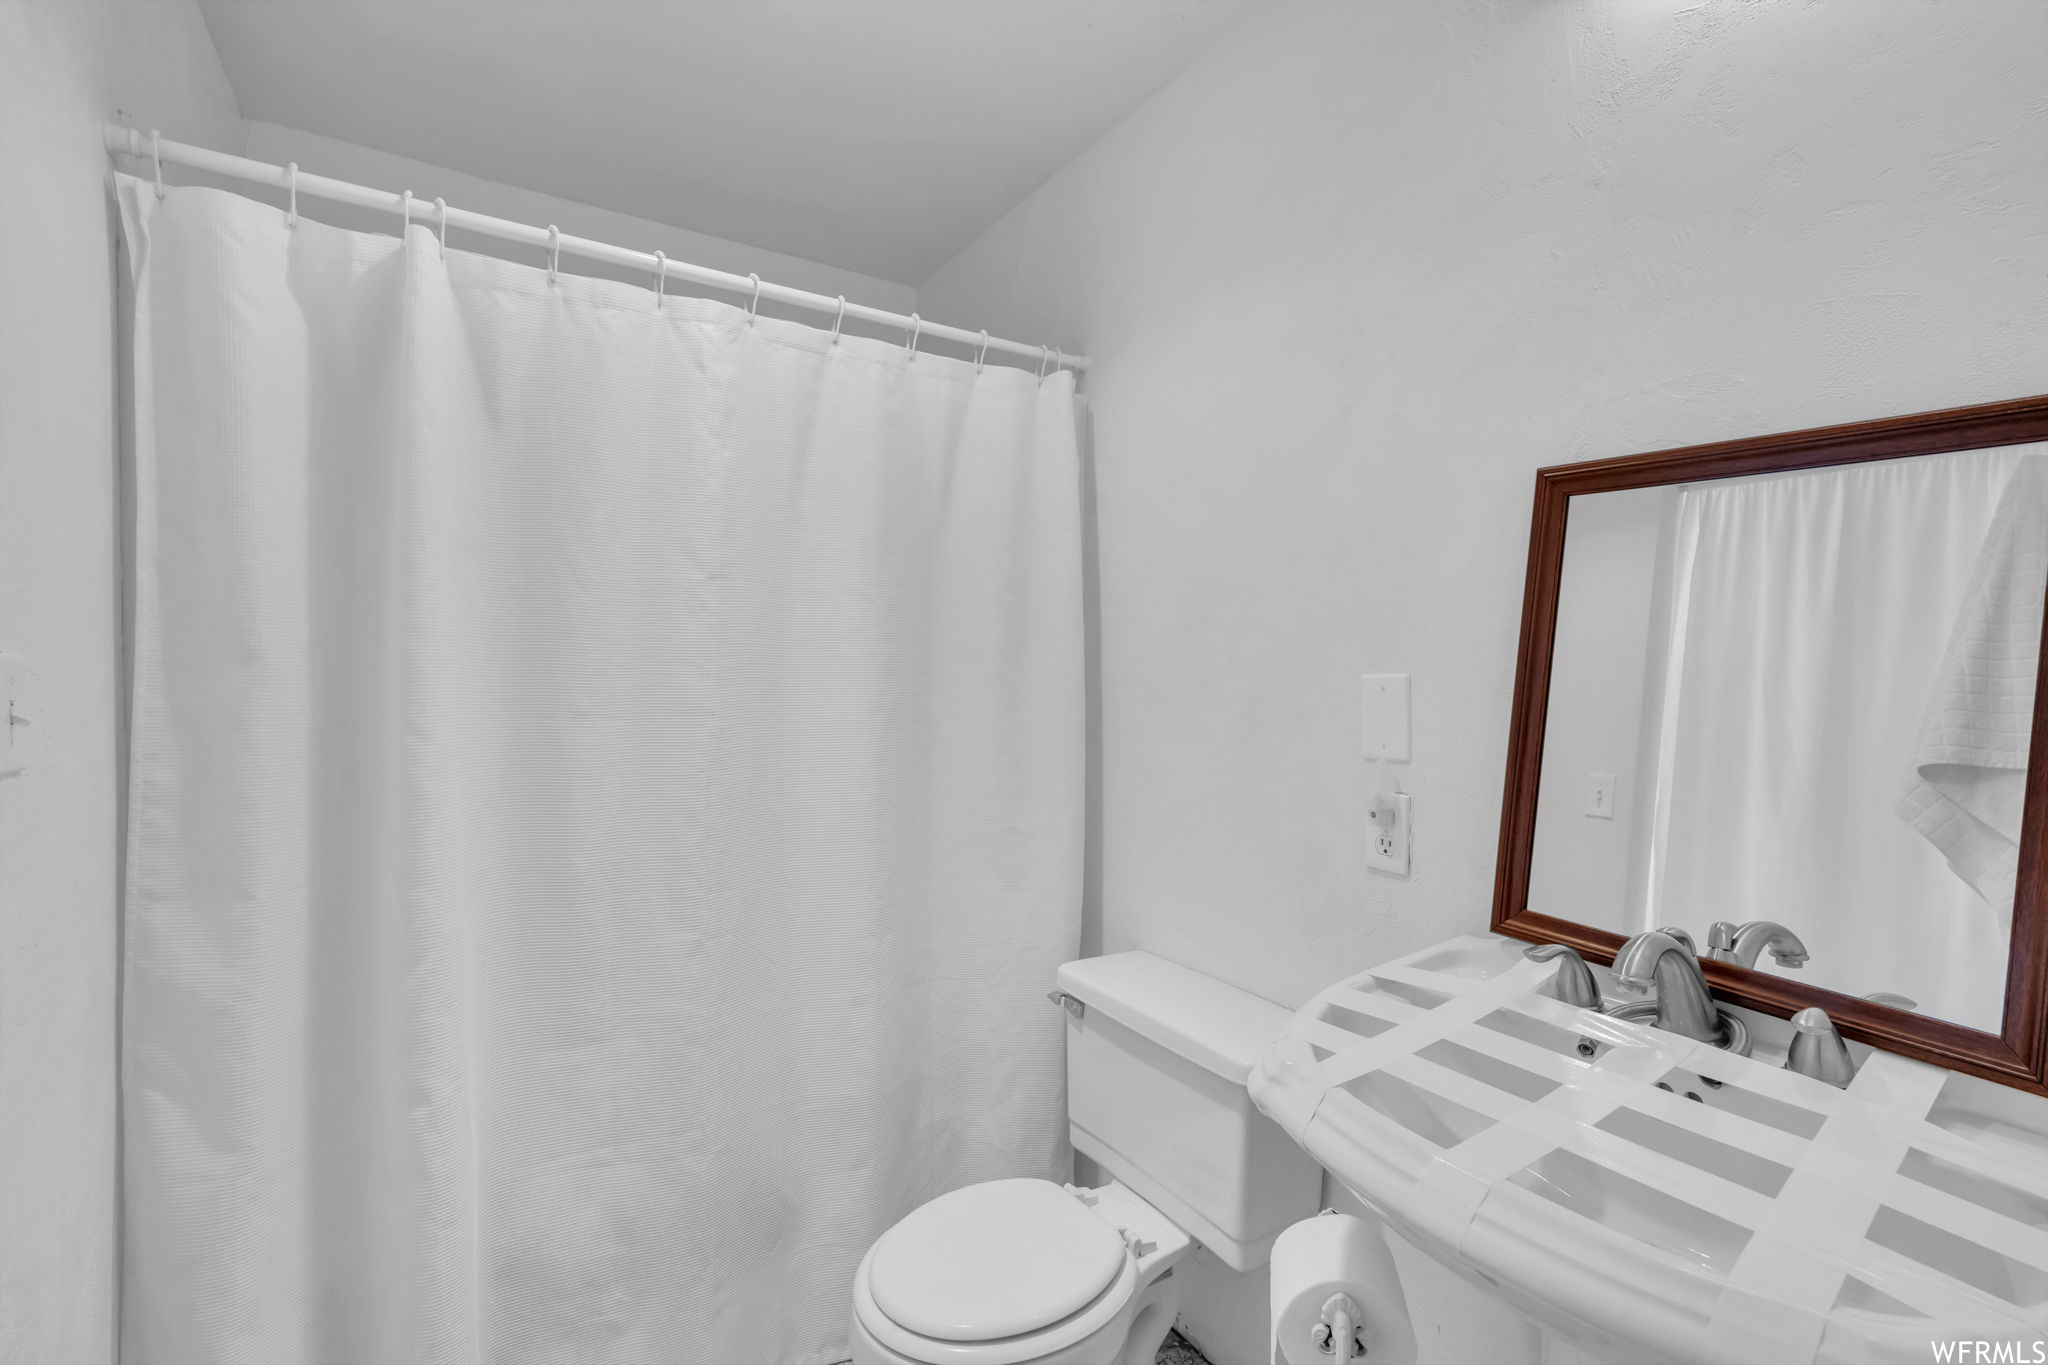 Bathroom with mirror and washbasin